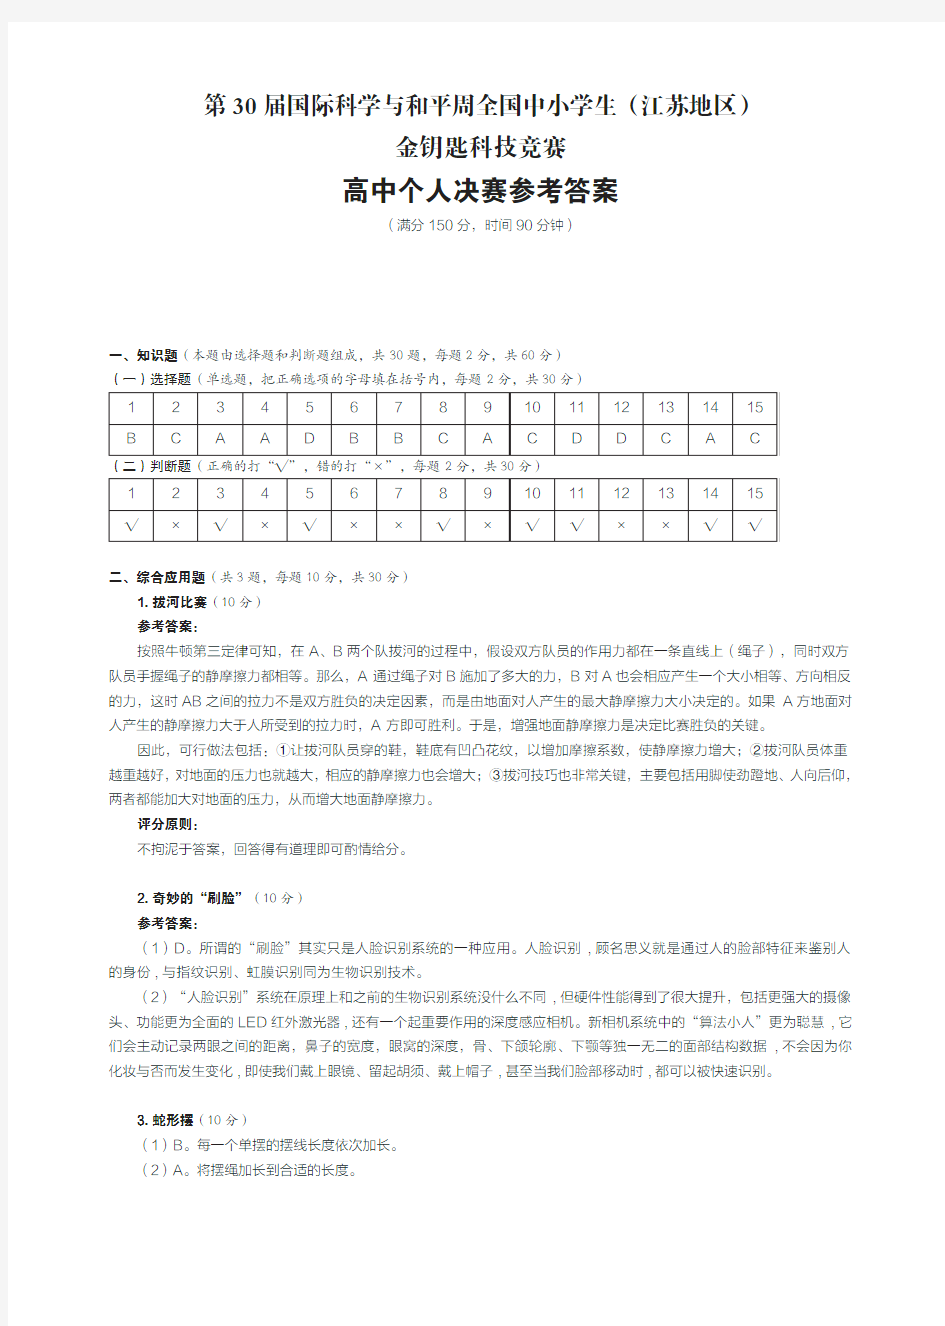 江苏省2018年第30届高中生金钥匙决赛卷答案